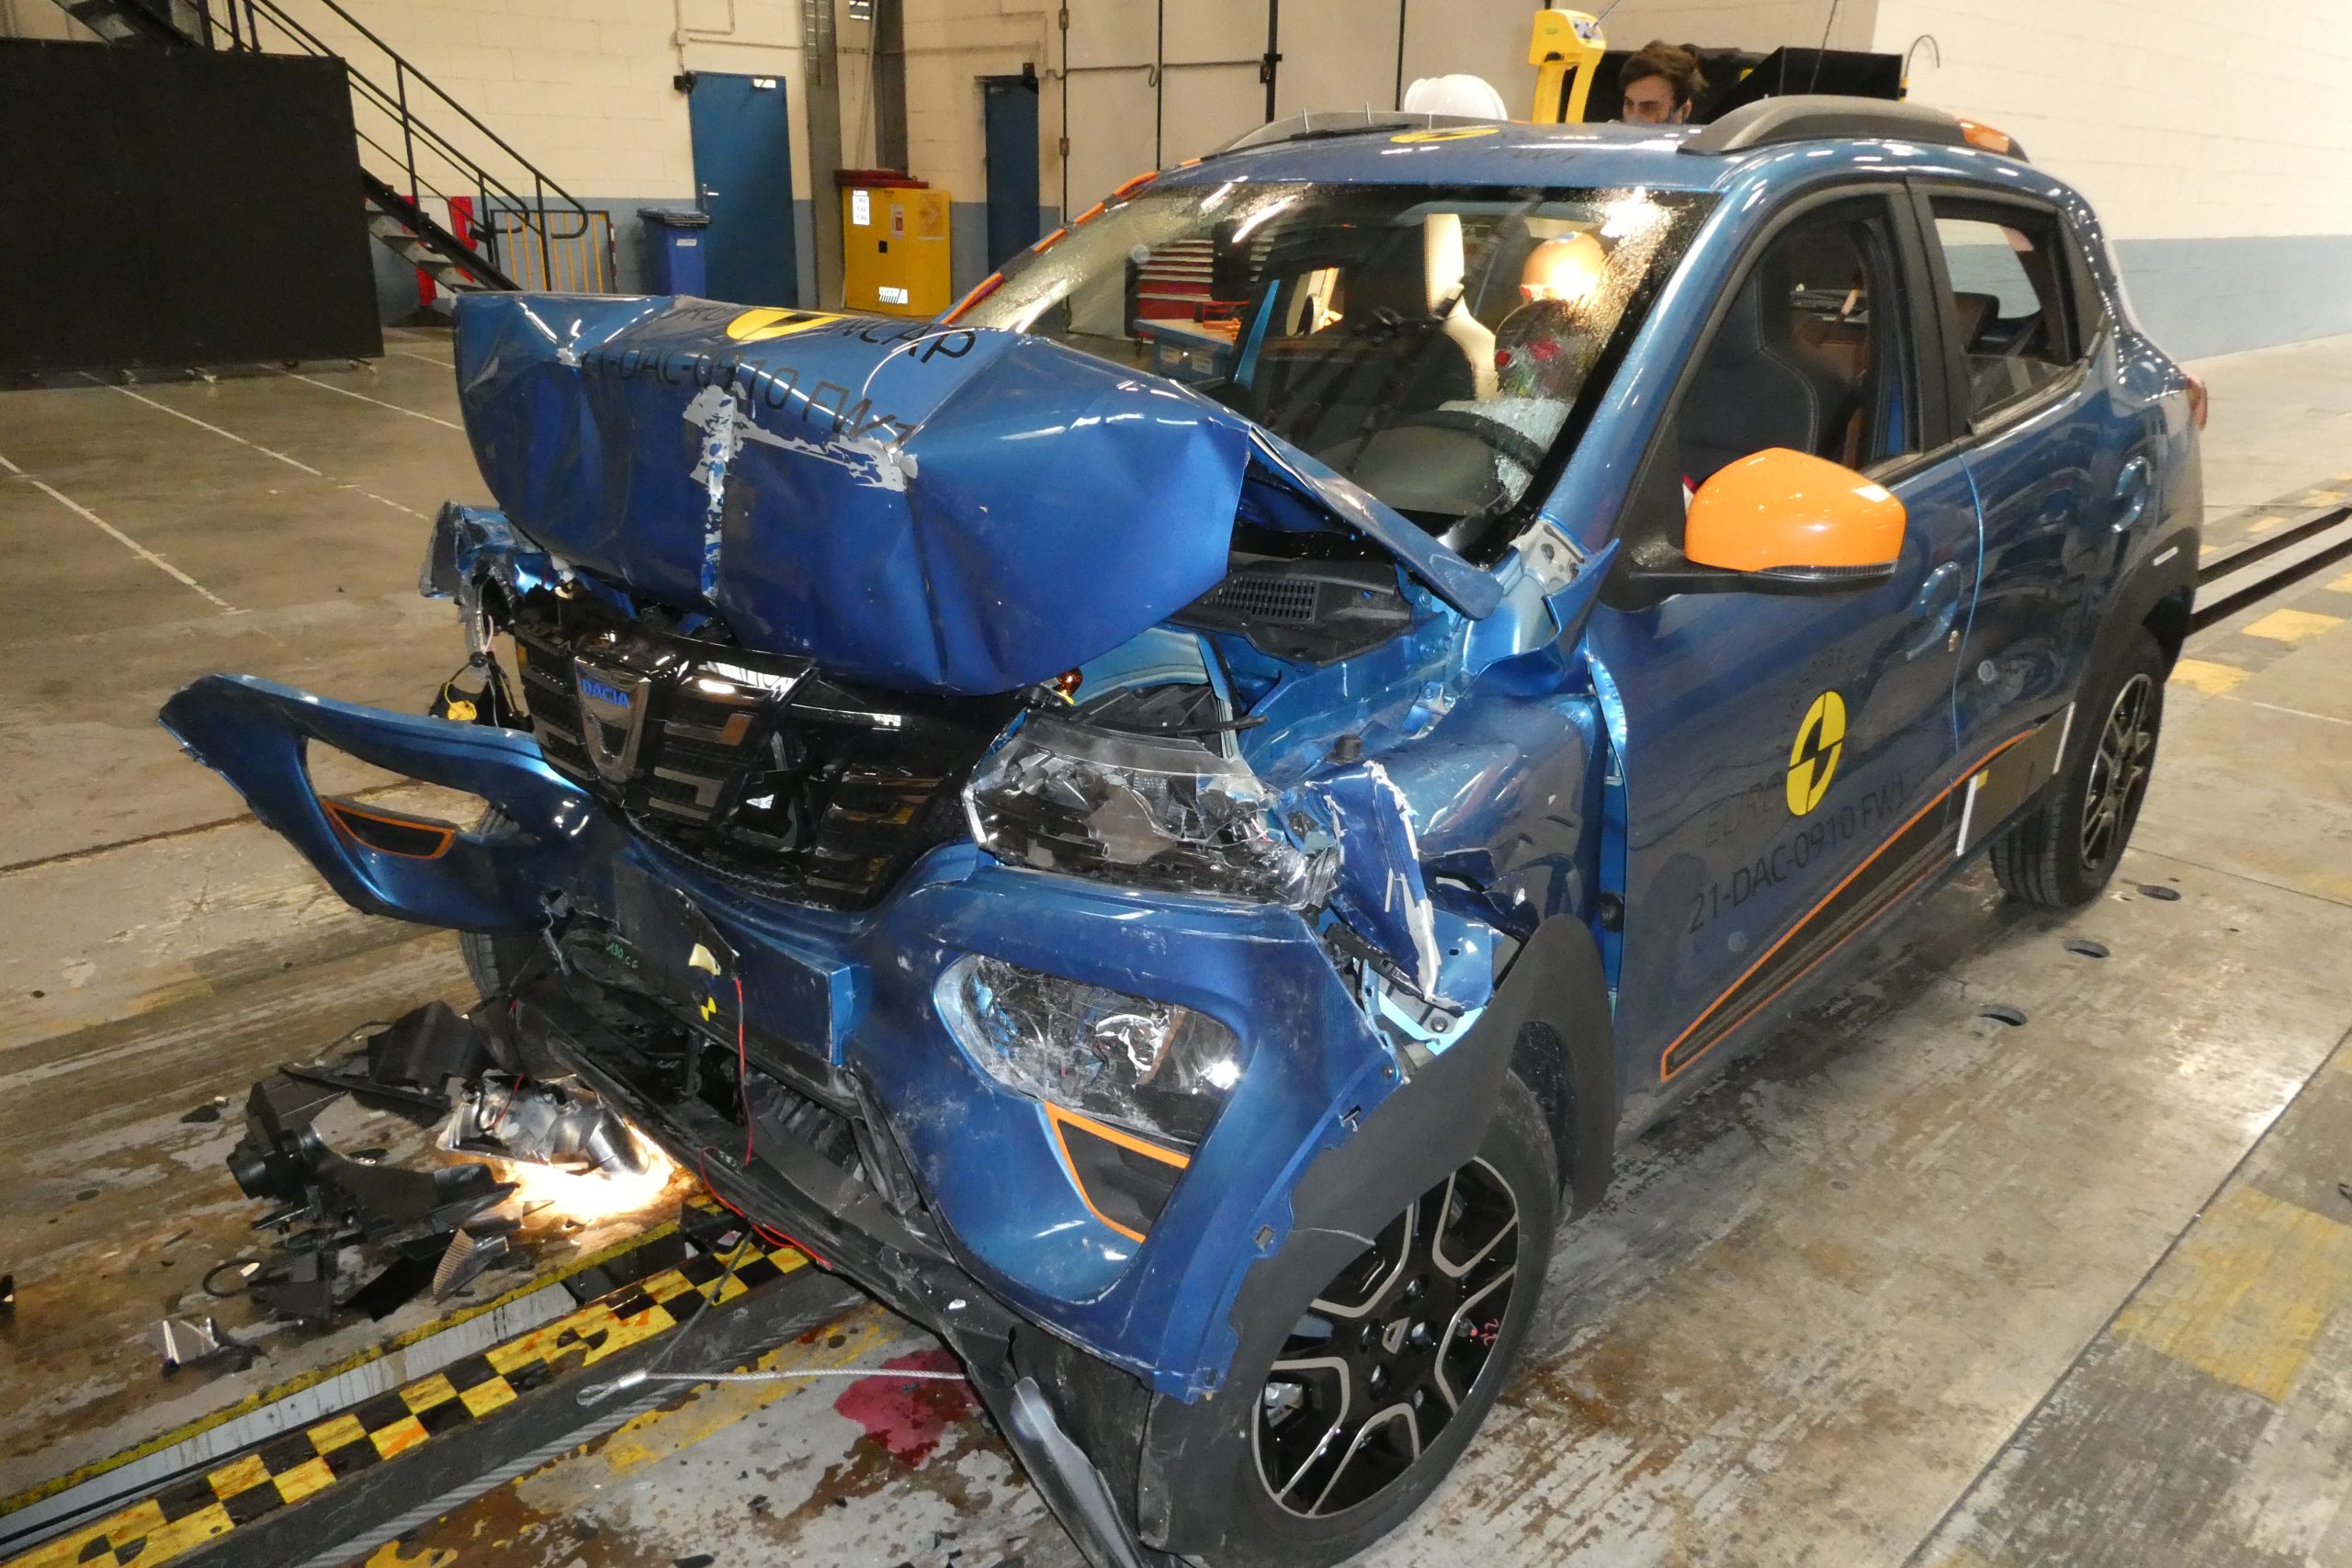 test bezbednosti, bezbednost, auto, automobil Euro NCAP